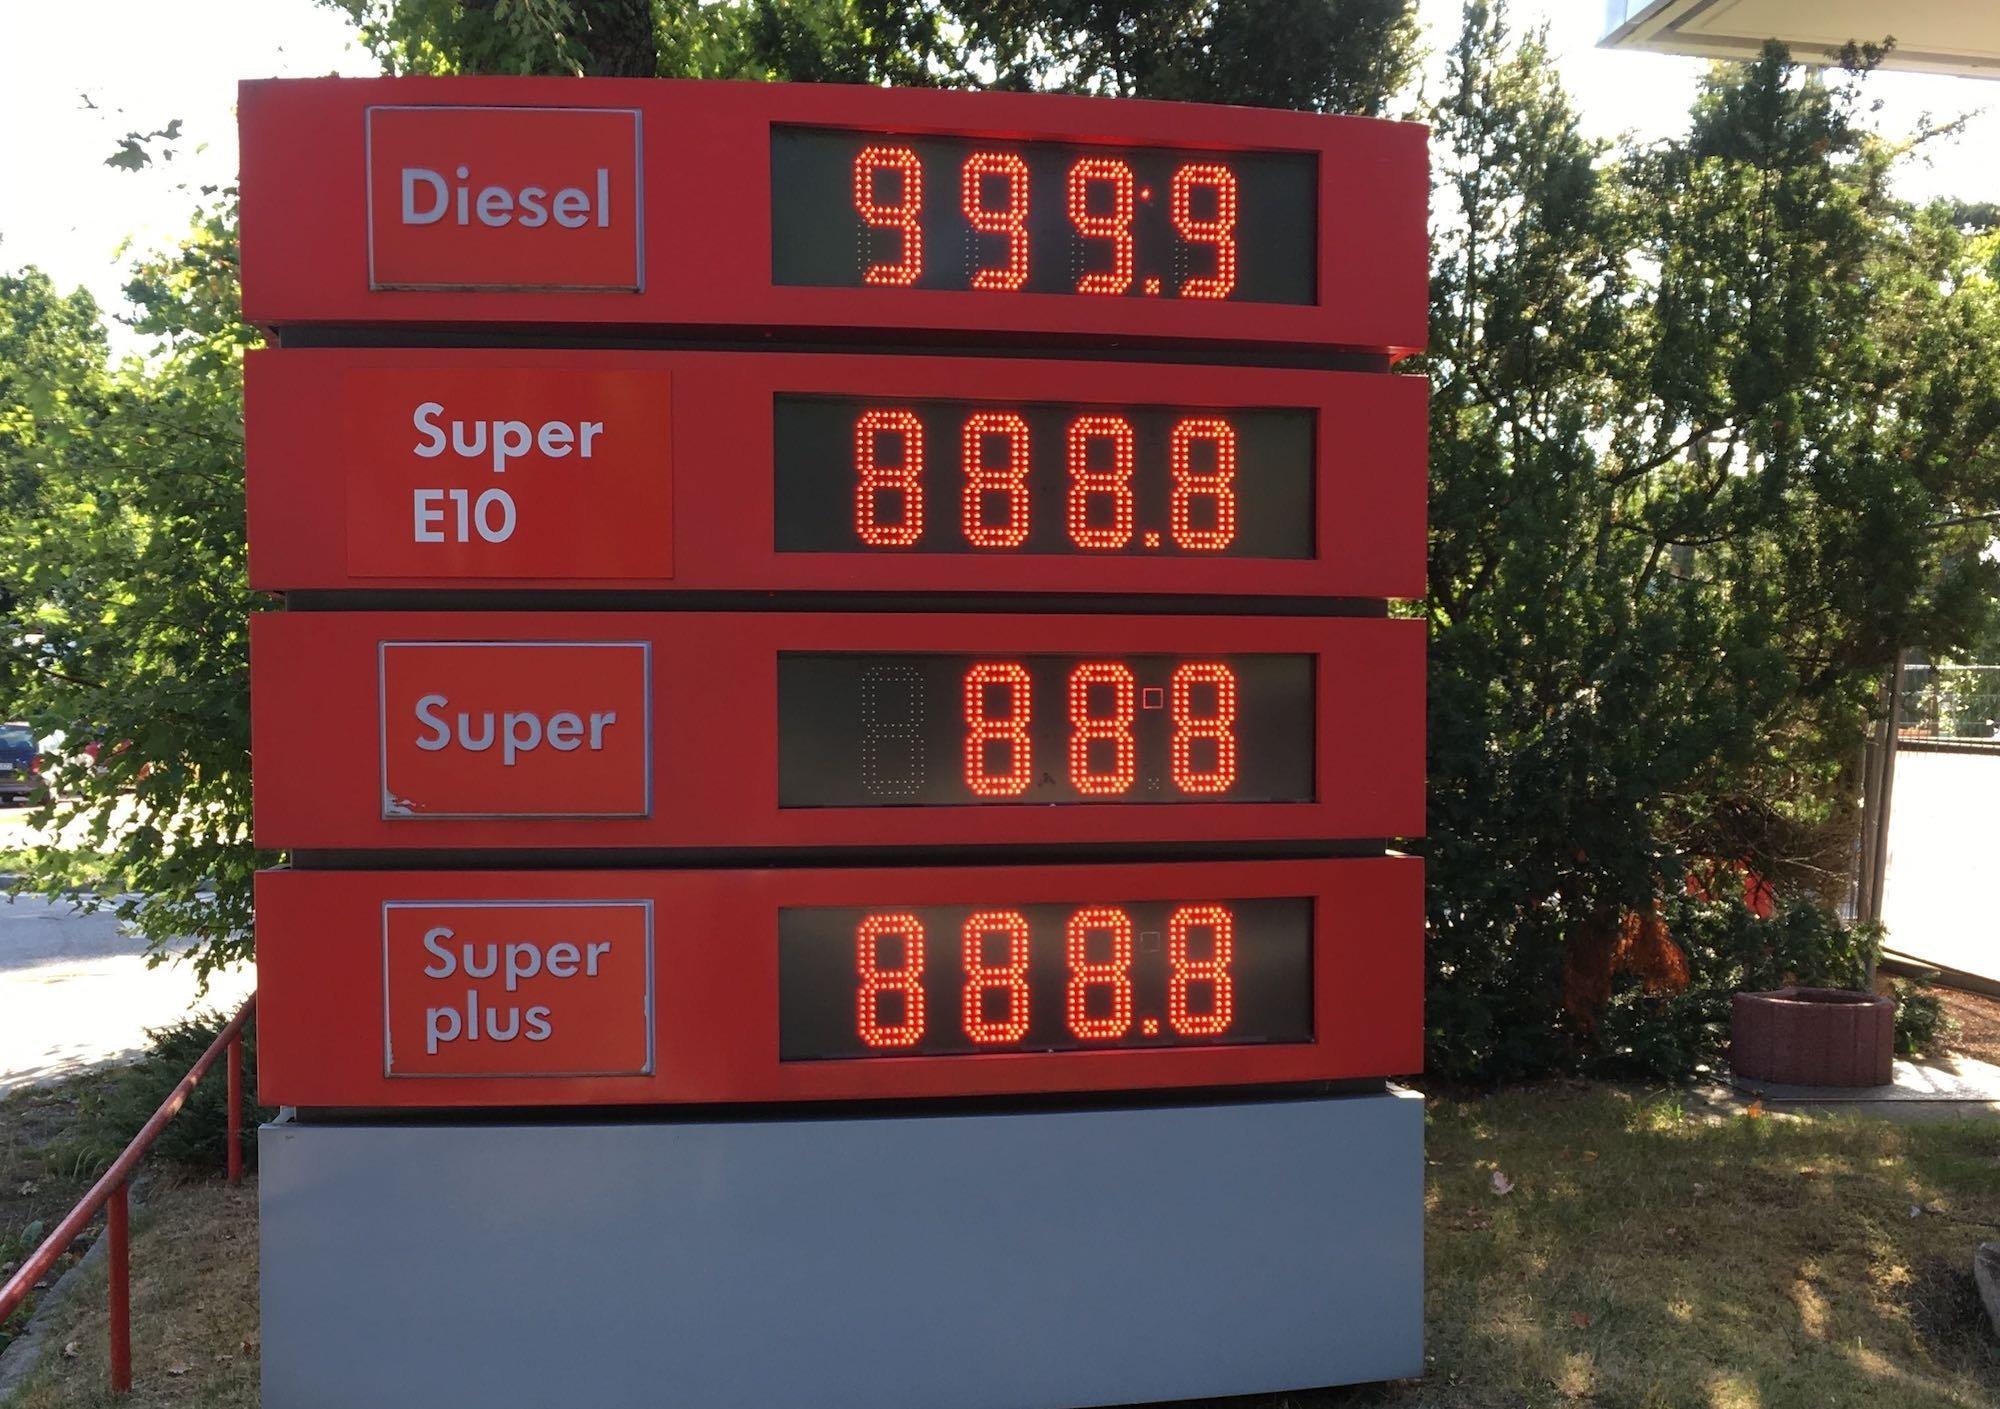 Leuchtschrift zeigt 999,9 und 888,8 neben den Worten „Diesel“ und Super E10". Die Preise der Zukunft? Nicht ganz. Benzin und Diesel werden teurer, wenn die CO2-Abgabe kommt, aber zehn Euro pro Liter sind dennoch unrealistisch. Das Bild zeigt die verwaiste Anzeige einer aufgegebenen Tankstelle.